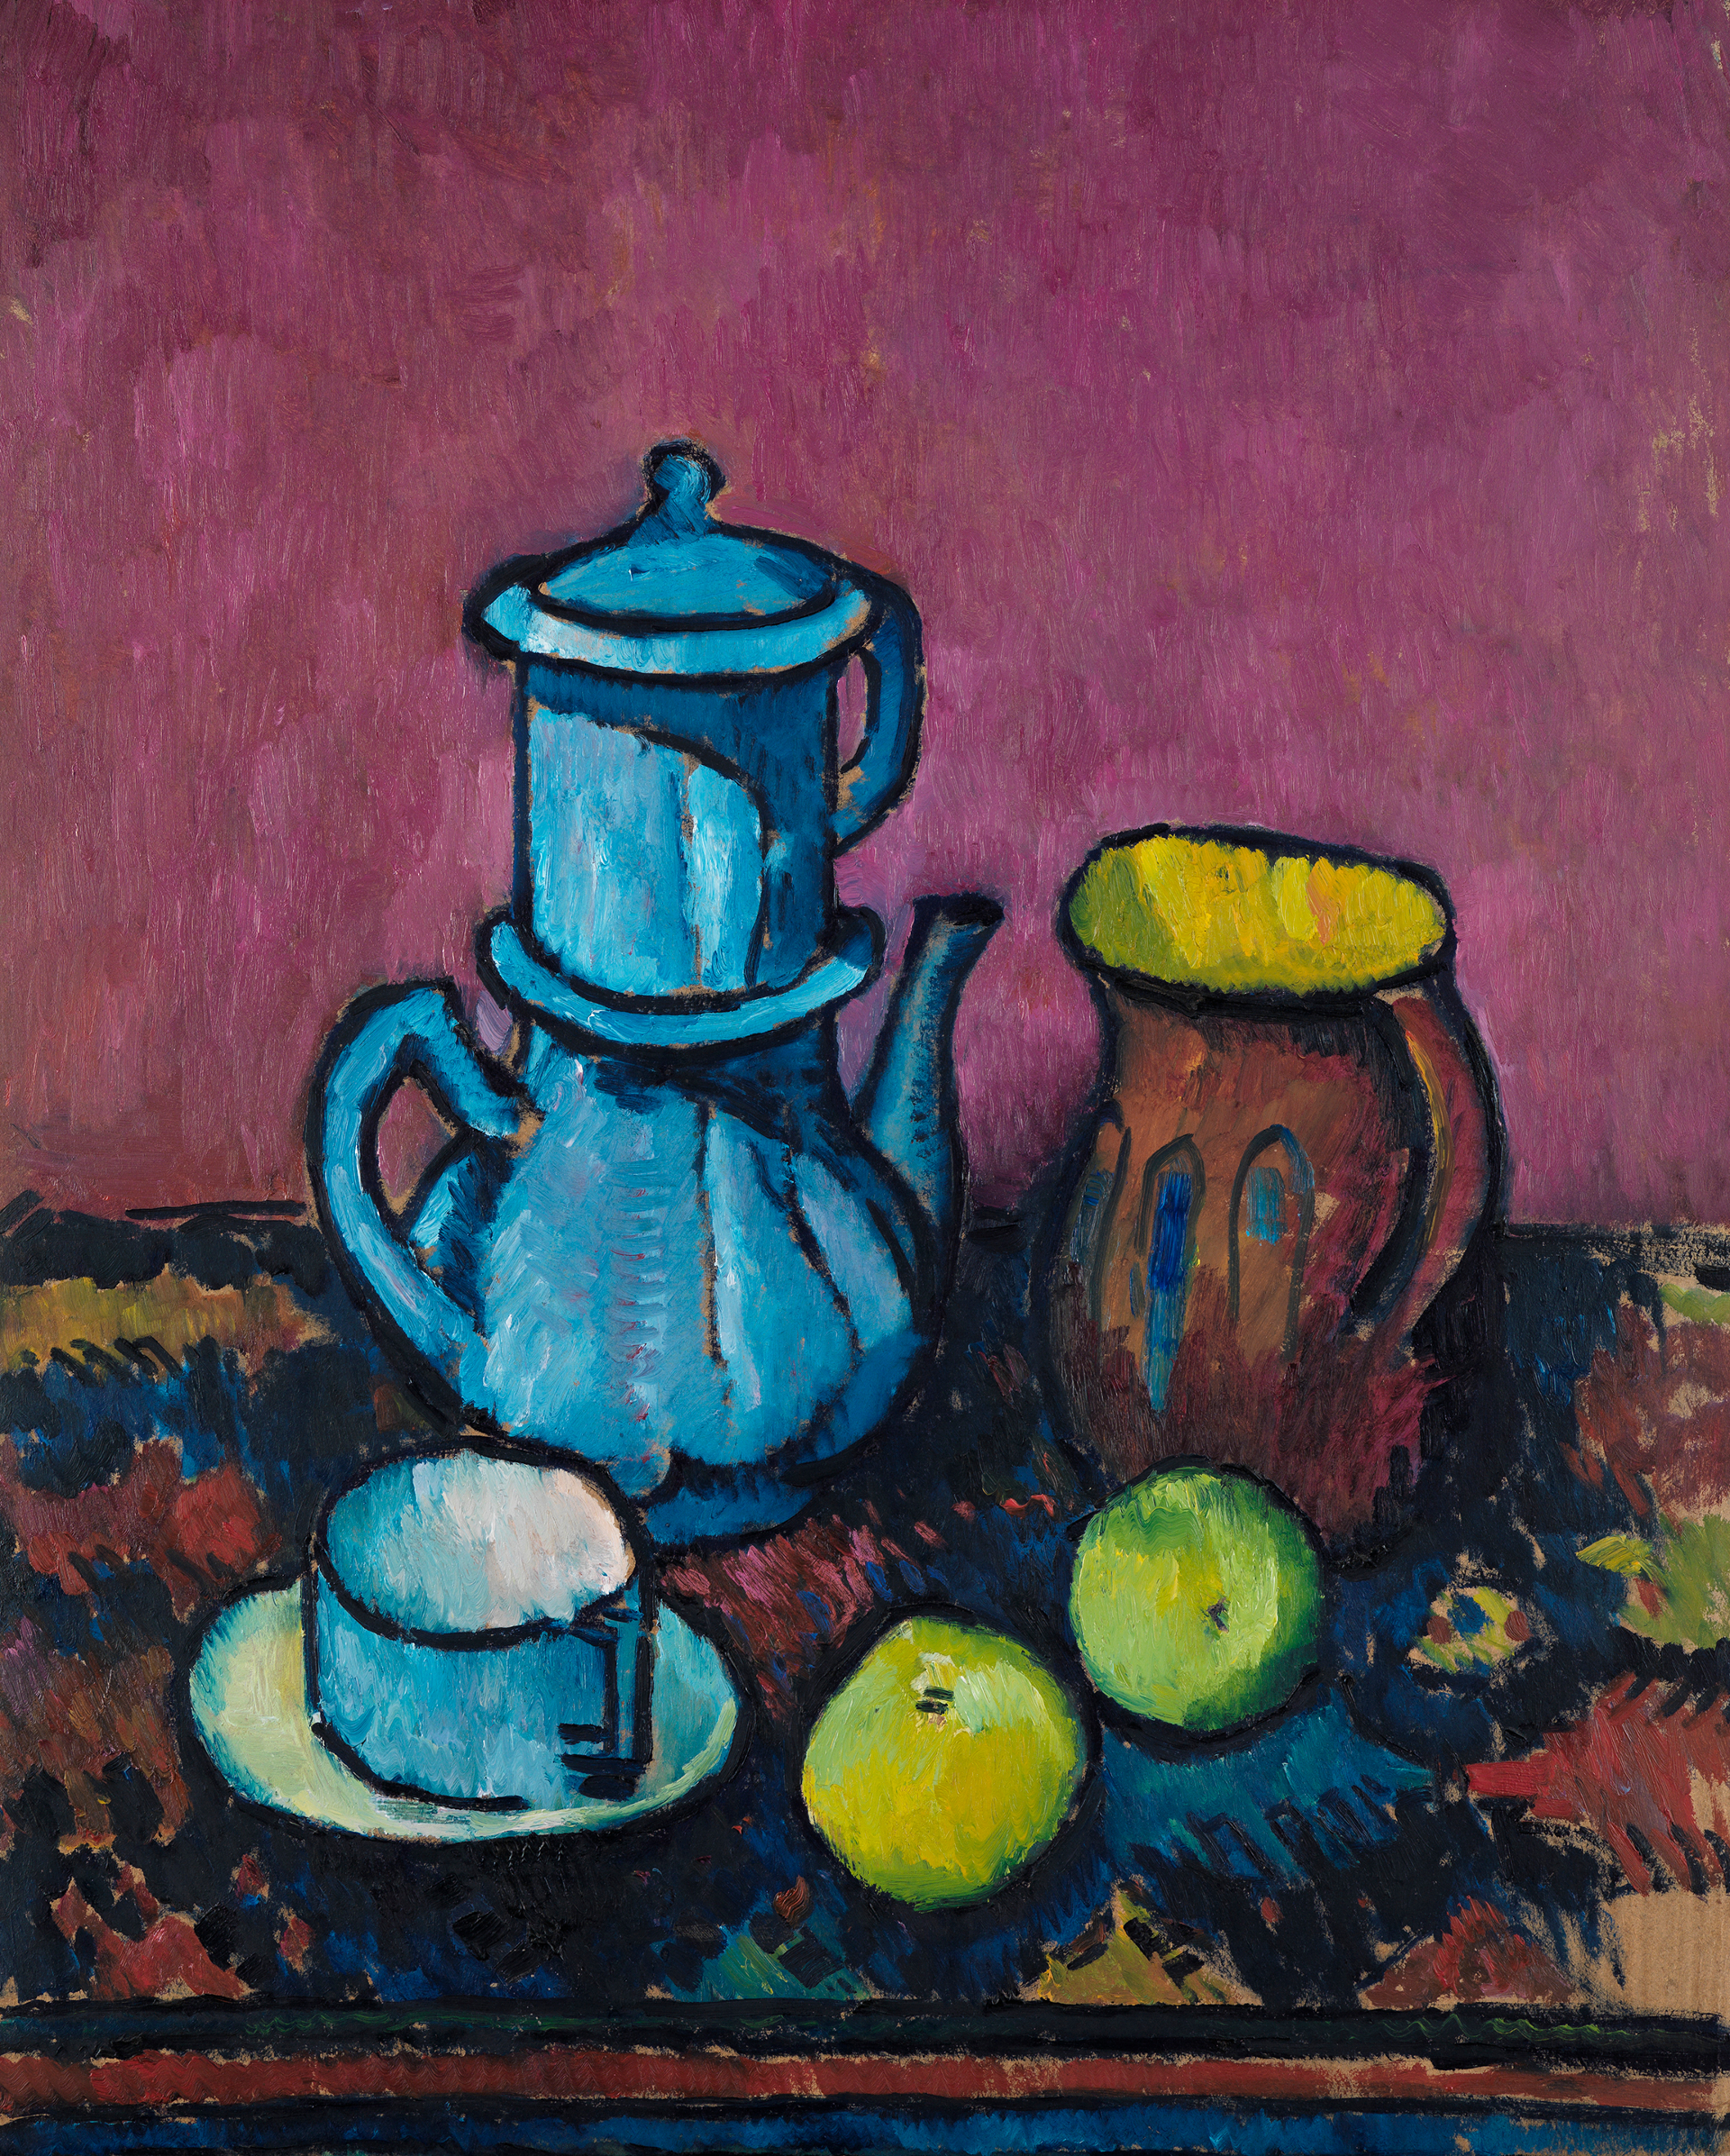 Detail aus Kanoldts Stillleben mit Kaffeegeschirr und Äpfeln